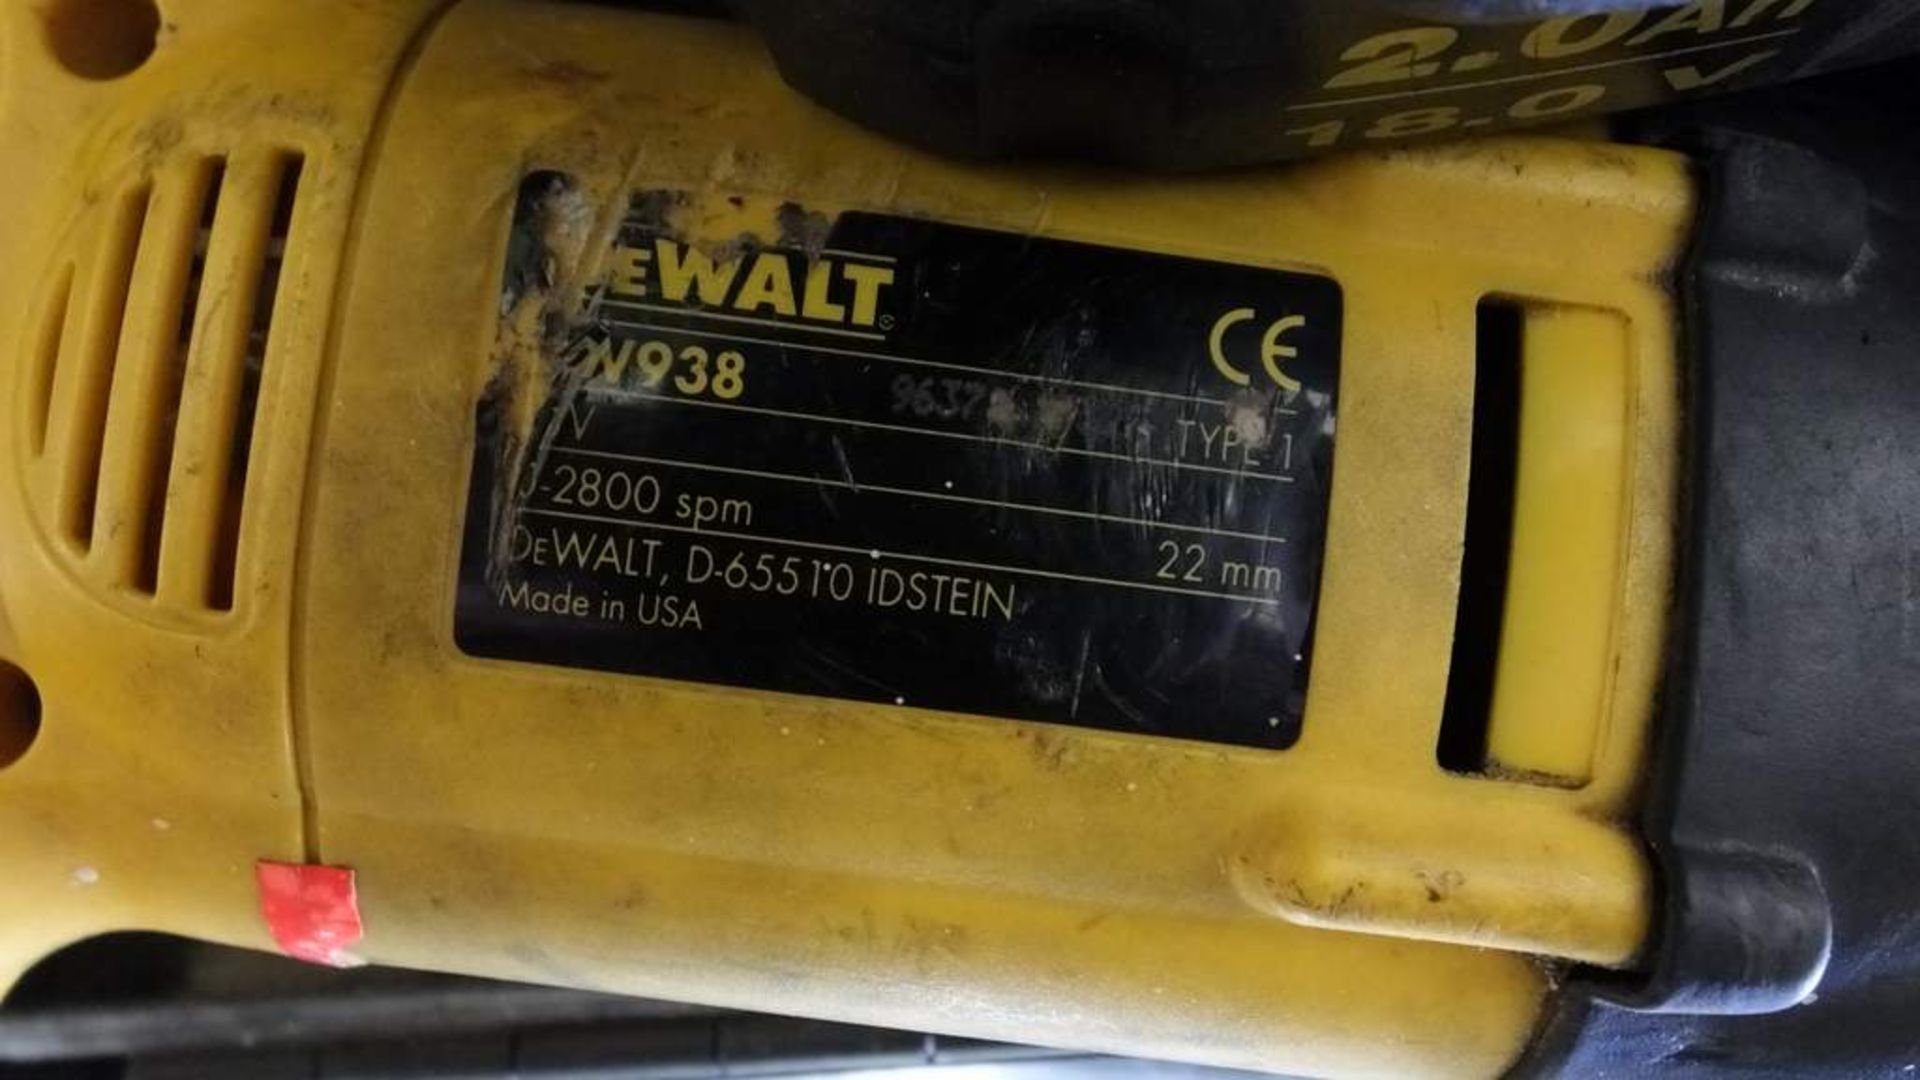 Dewalt DW938 electric saw - Image 4 of 4